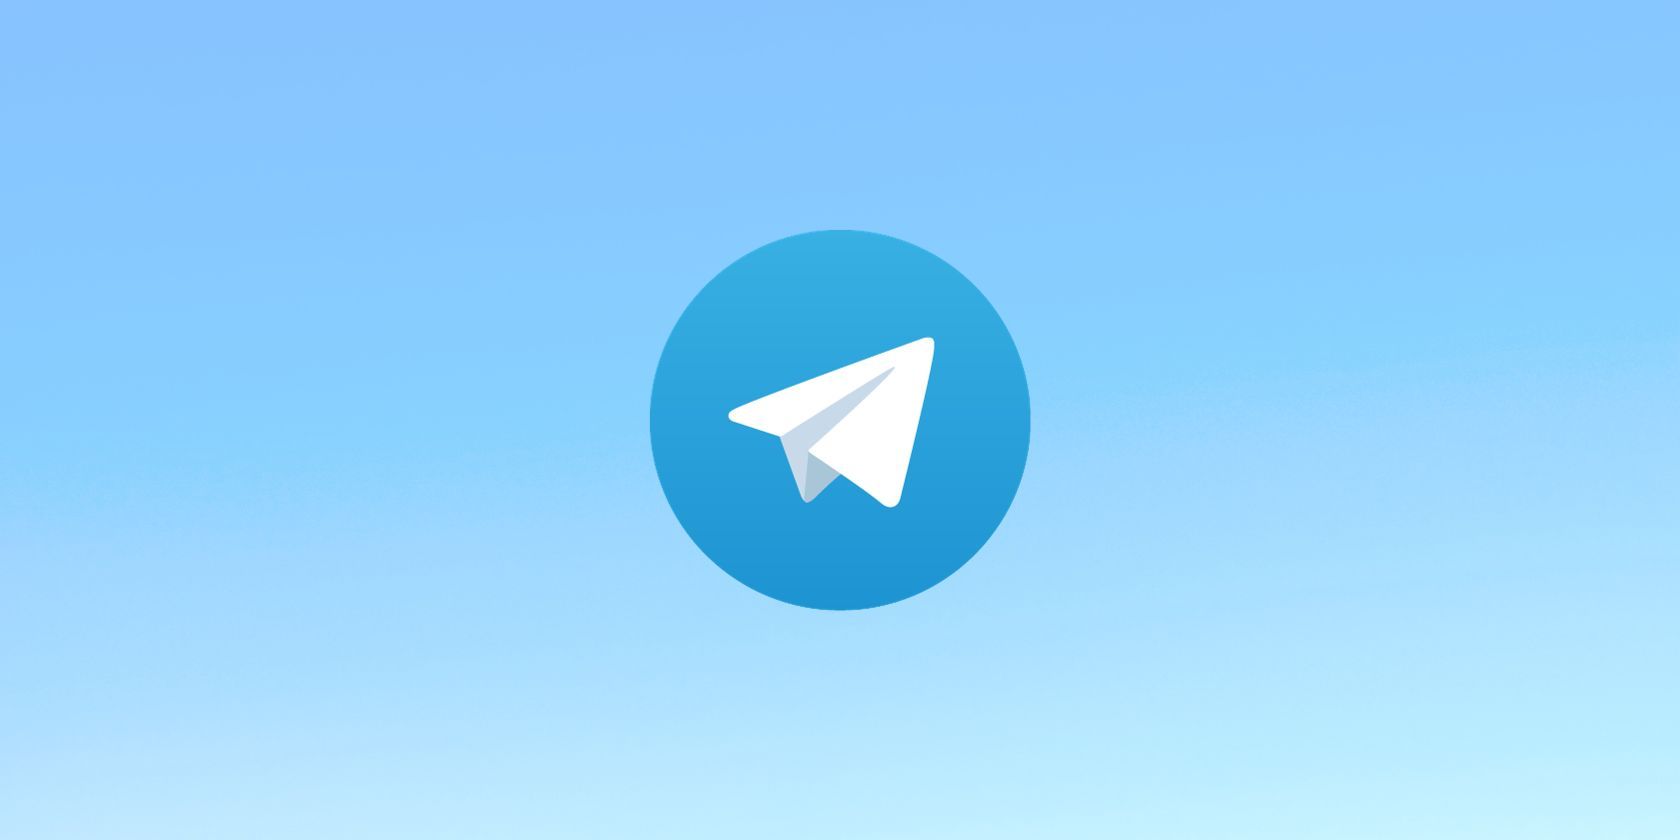 Telegram logo on light blue background